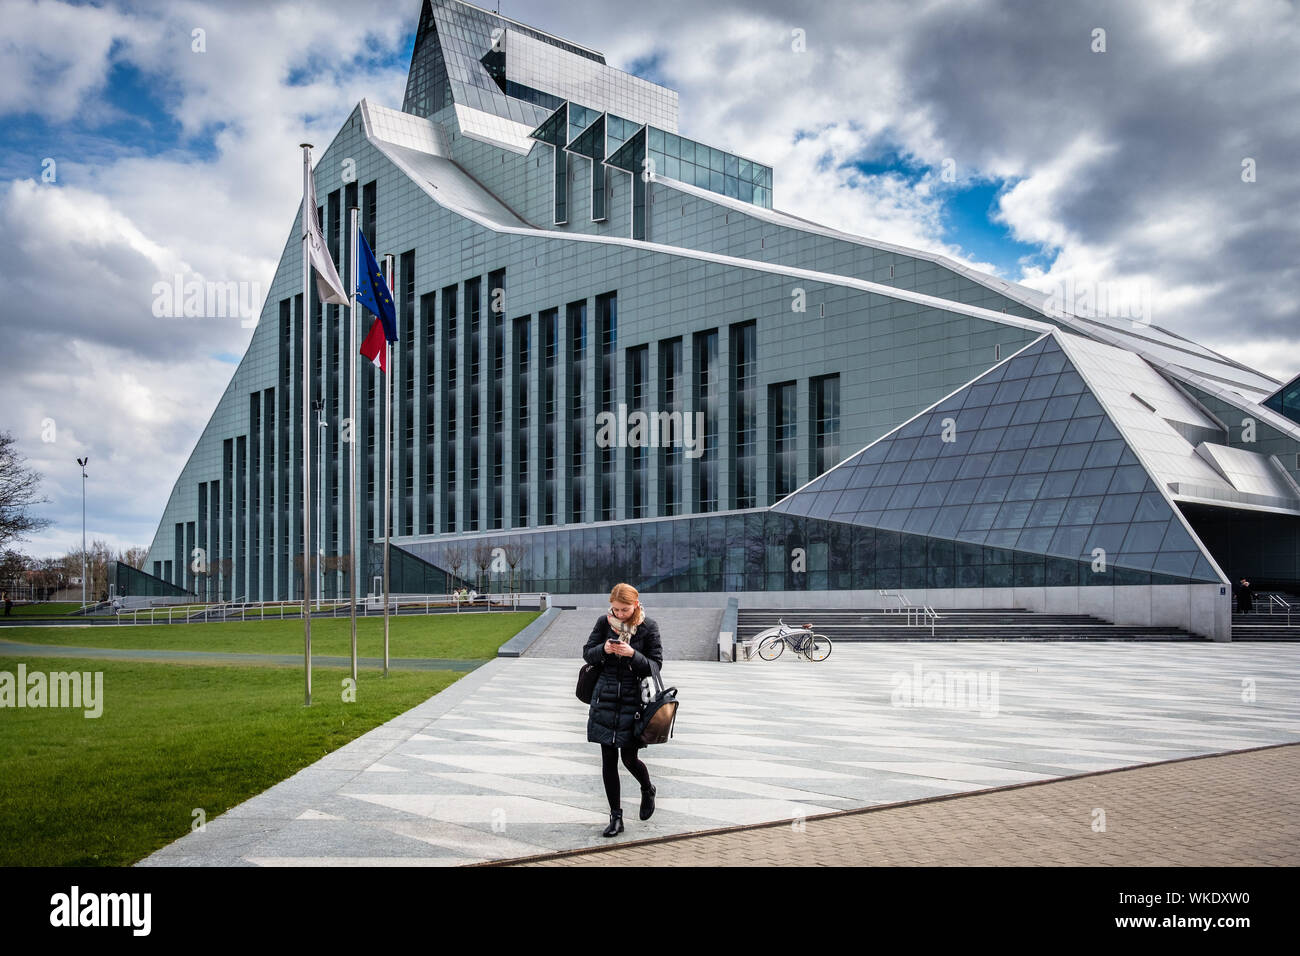 Letonia, Riga. La Biblioteca Nacional de 13 pisos edificio de vidrio y metal, con una colección de 6 millones de libros, en las orillas del río Dauvaga. Mujer Foto de stock